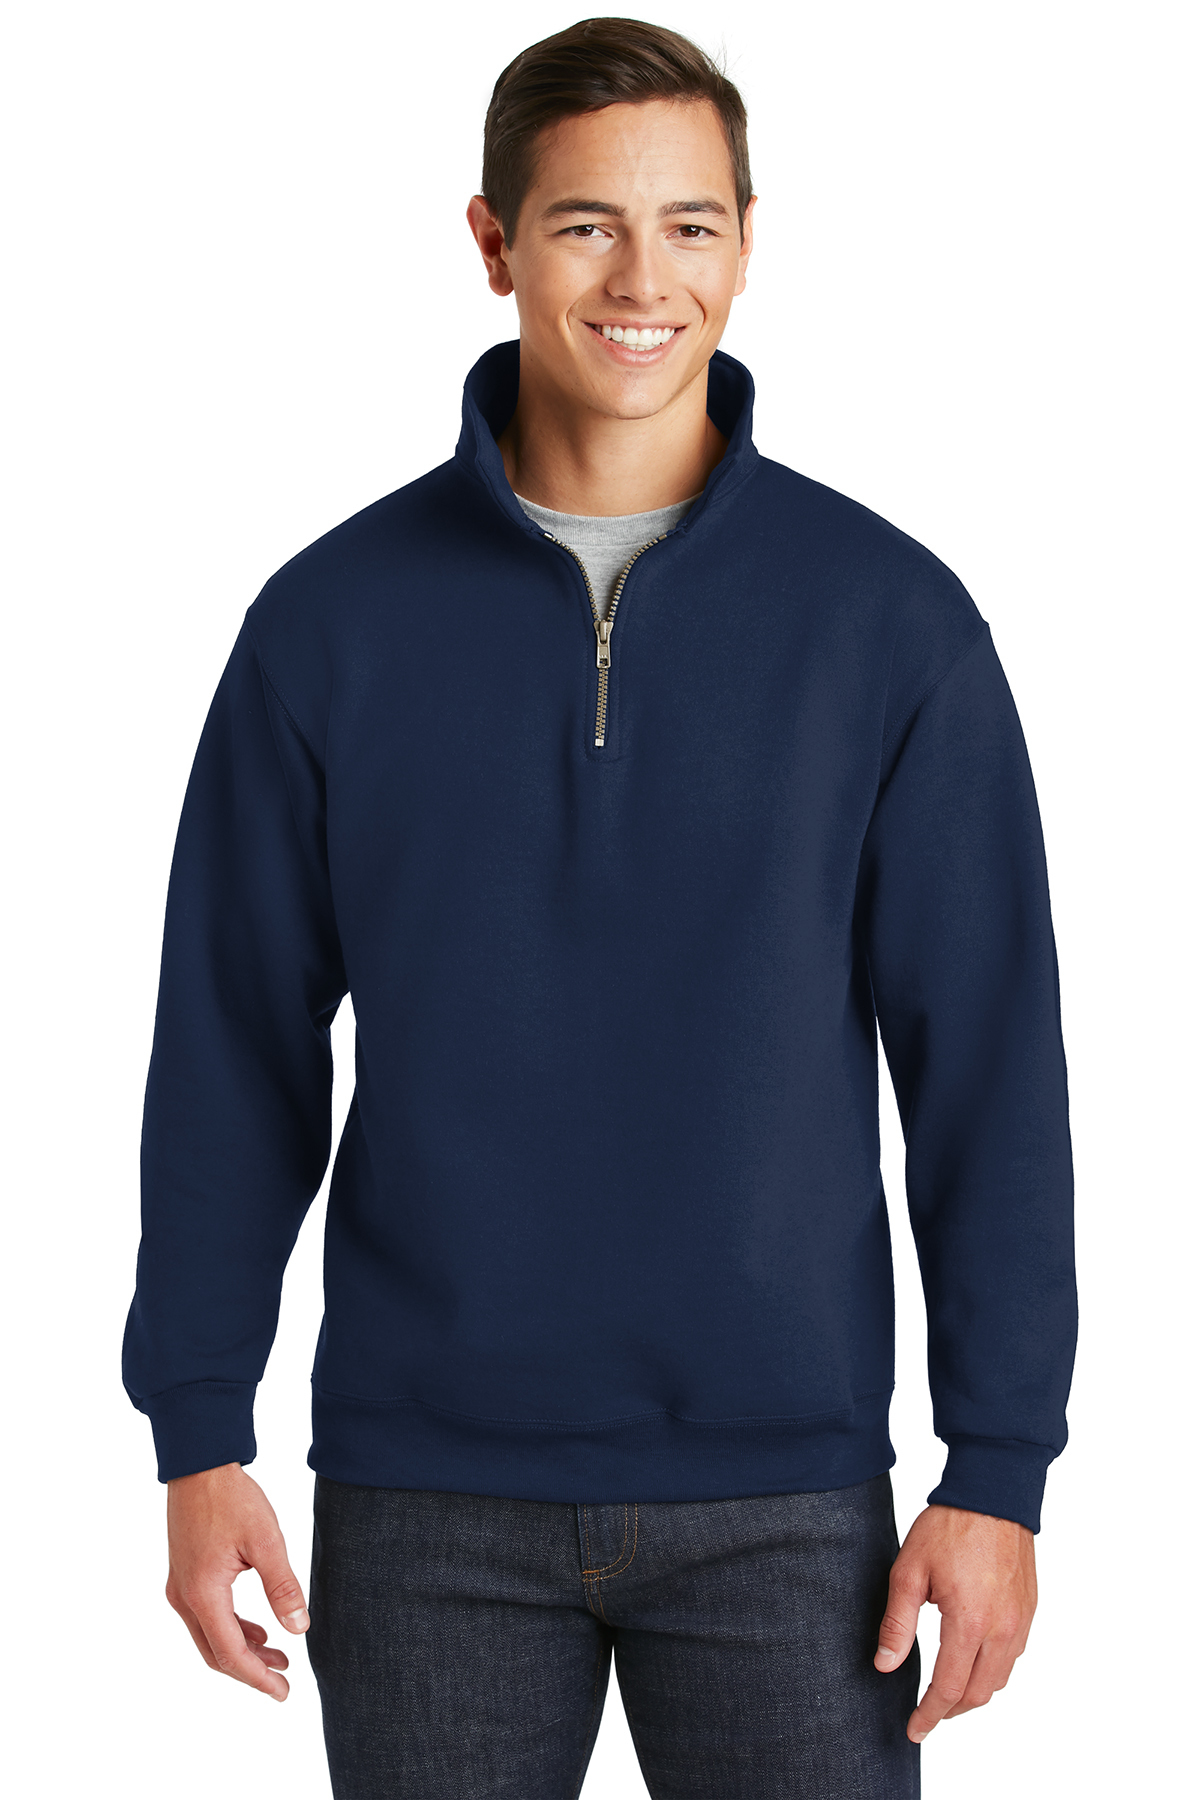 50/50 Super Sweats Fleece Quarter-Zip Pullover 4528 S-3XL Jerzees Men's 9.5 oz 